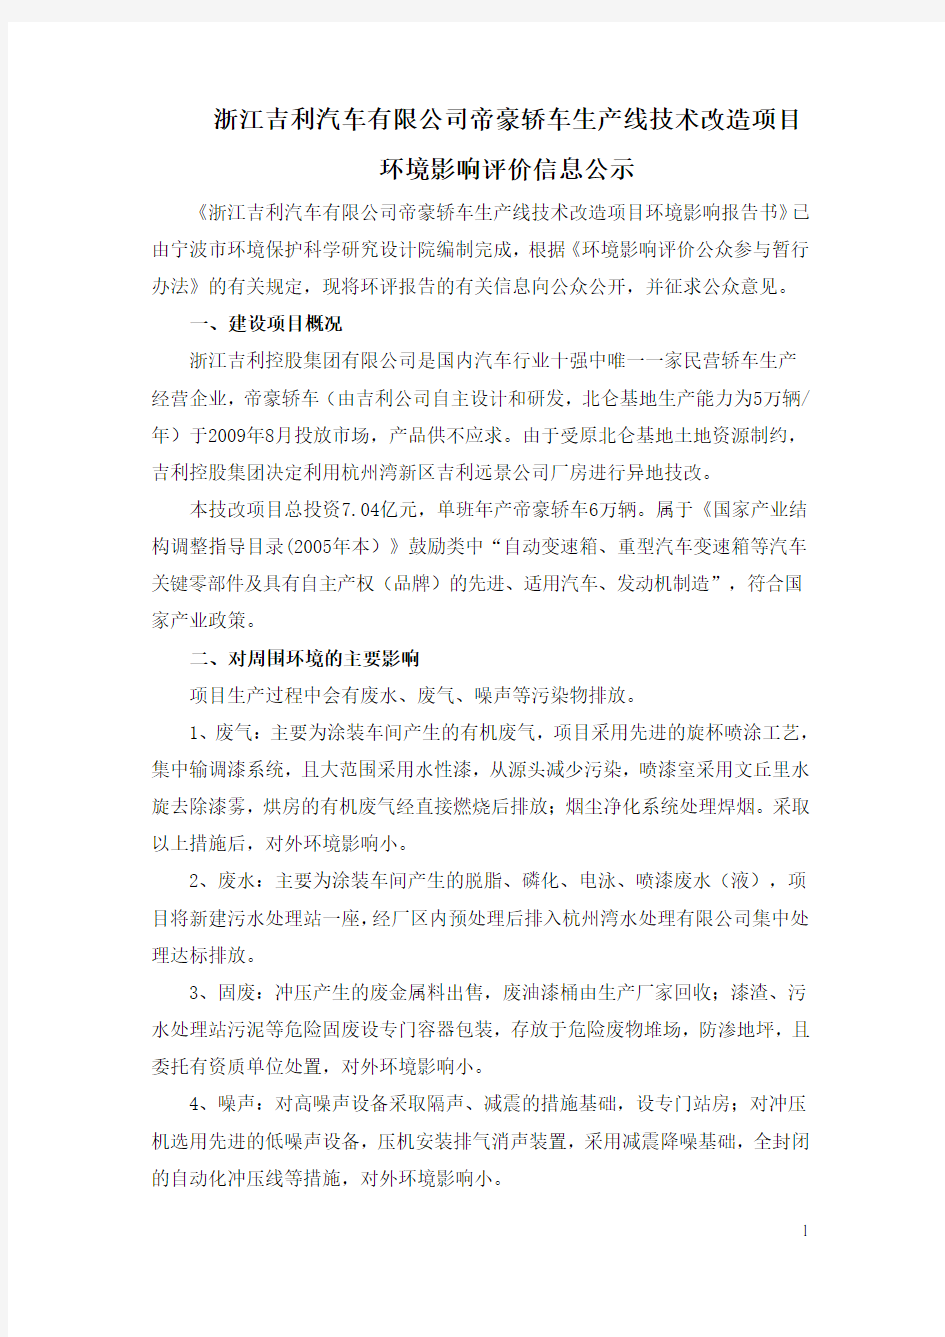 浙江吉利汽车有限公司帝豪轿车生产线技术改造项目环境影响评价评价